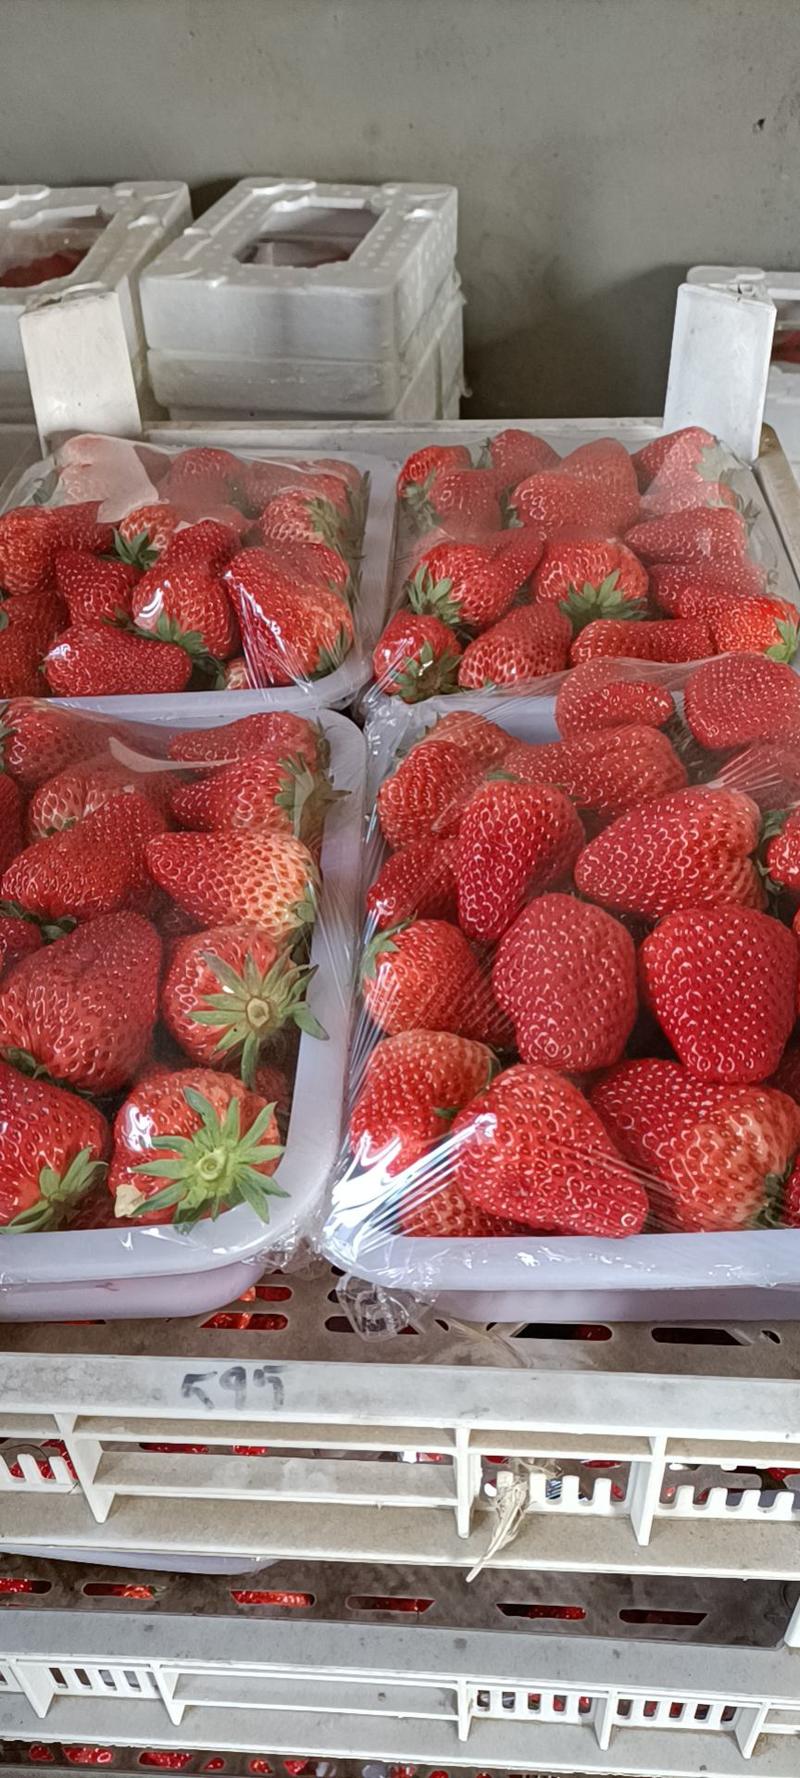 昌黎县红颜草莓大量上市